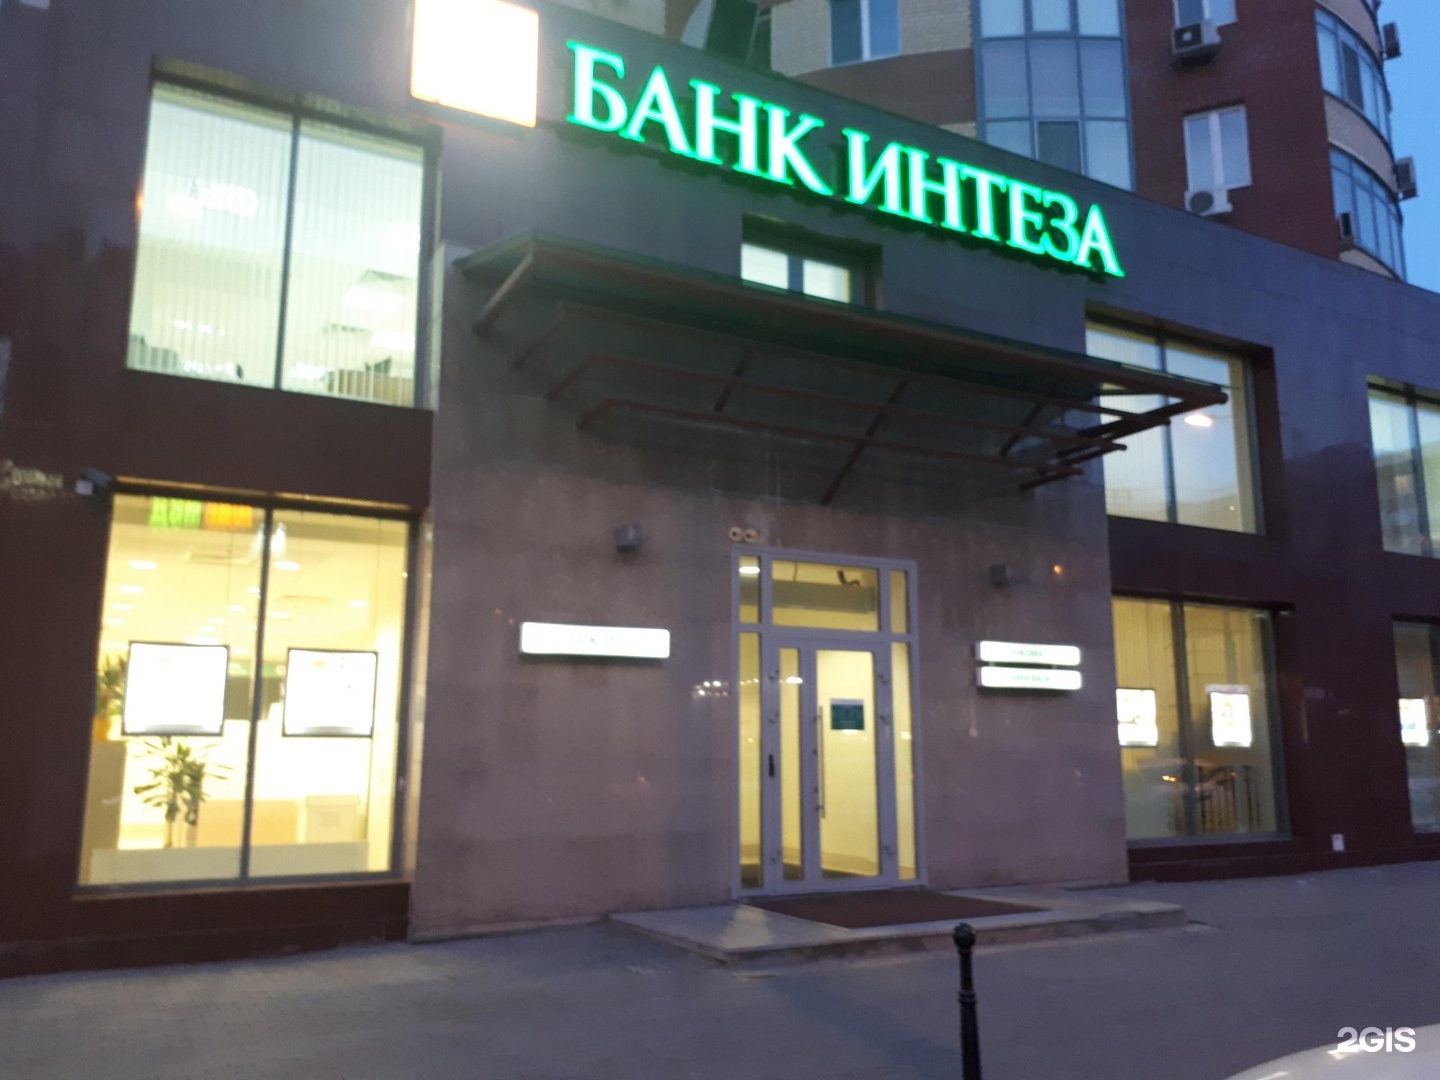 Советская 51 тюмень. Банк Интеза. Банк Интеза Сочи. Банк Интеза Екатеринбург.